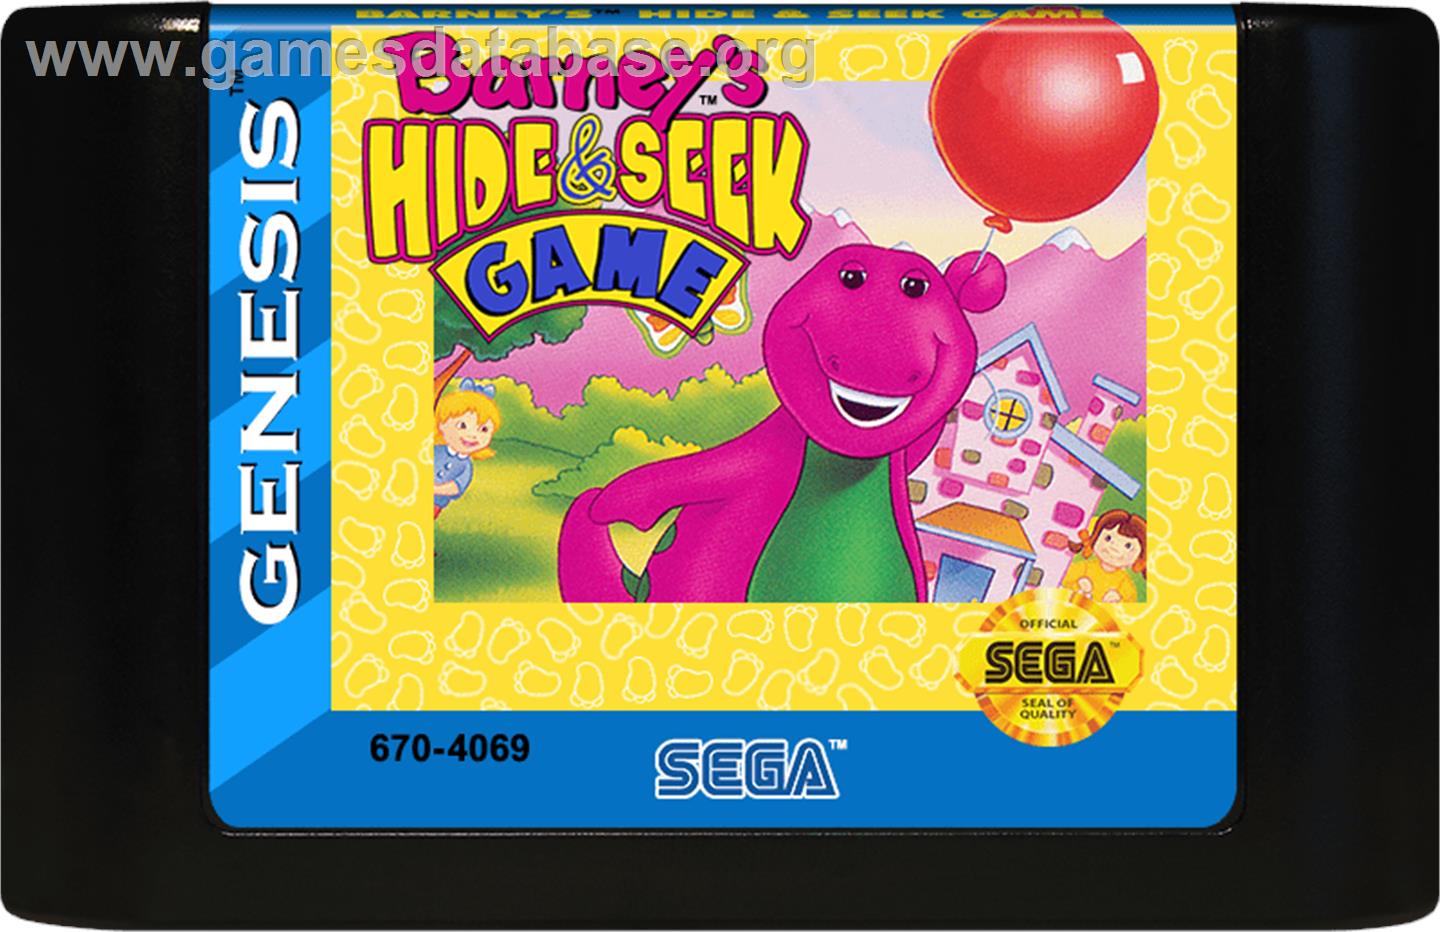 Barney's Hide and Seek Game - Sega Genesis - Artwork - Cartridge